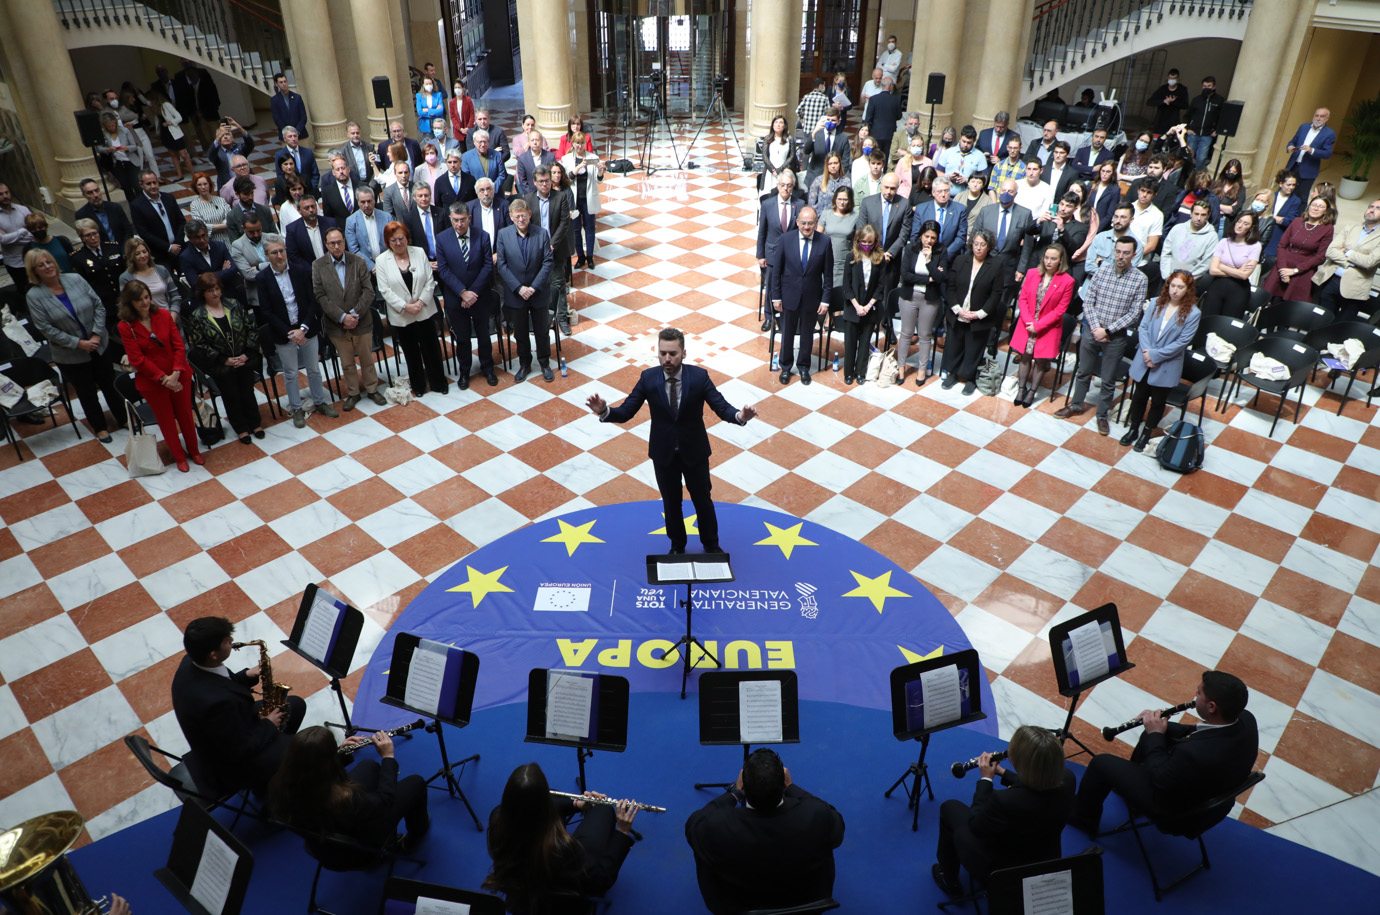 Puig reivindica una Europa progressista, social, justa i unida en la defensa dels valors democràtics